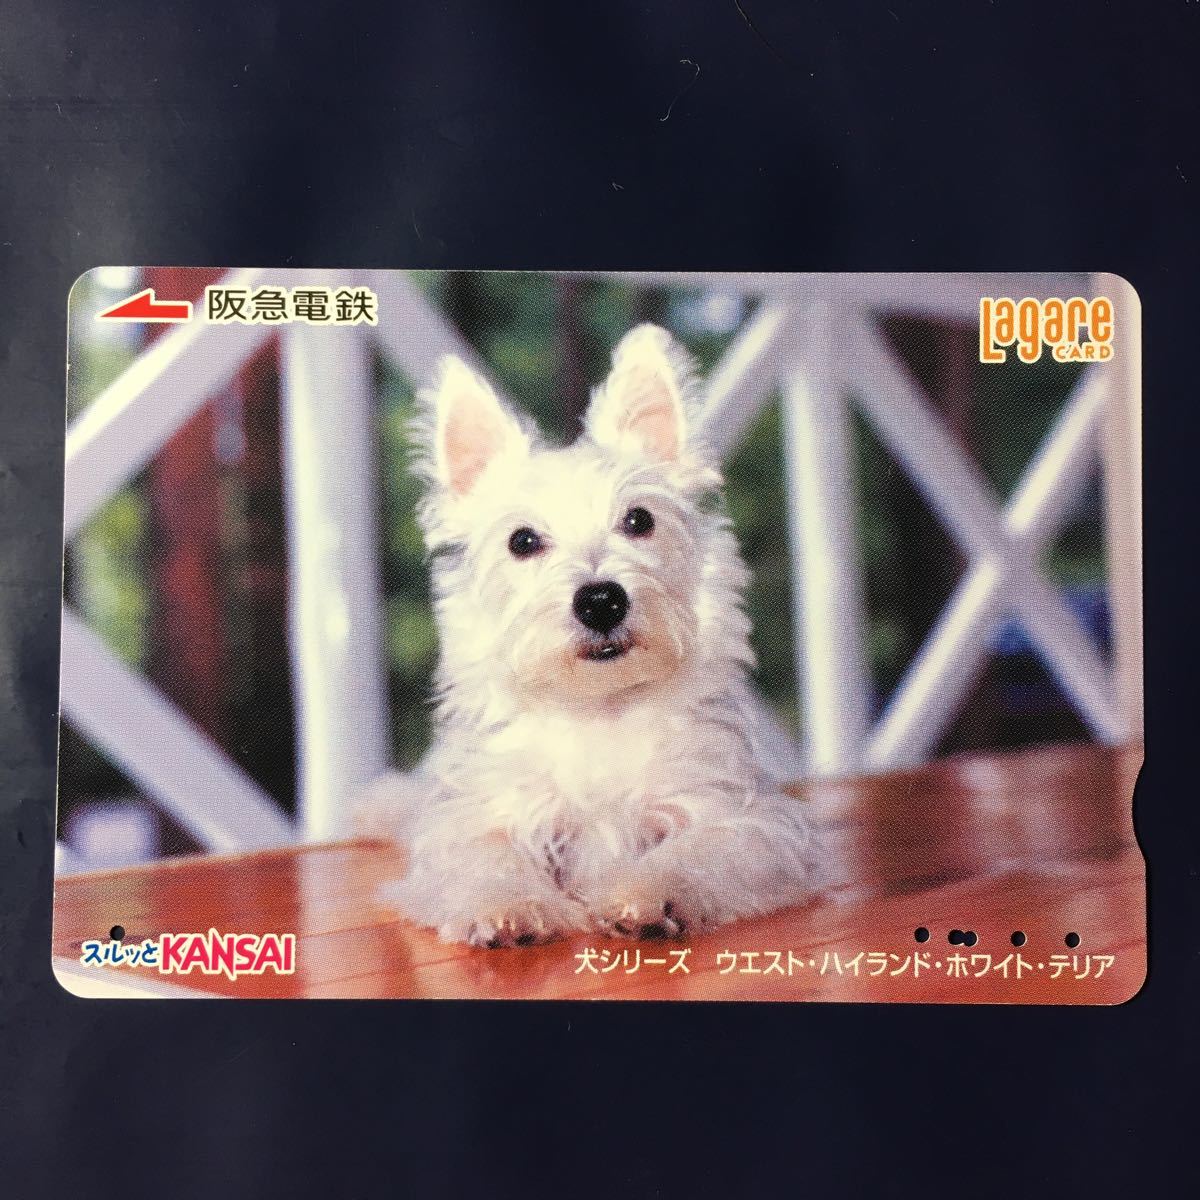 2006 год 7 месяц 25 день продажа рисунок - собака серии [ талия * Highland * белый * терьер ]-. внезапный la девушка карта ( использованный Surutto KANSAI)